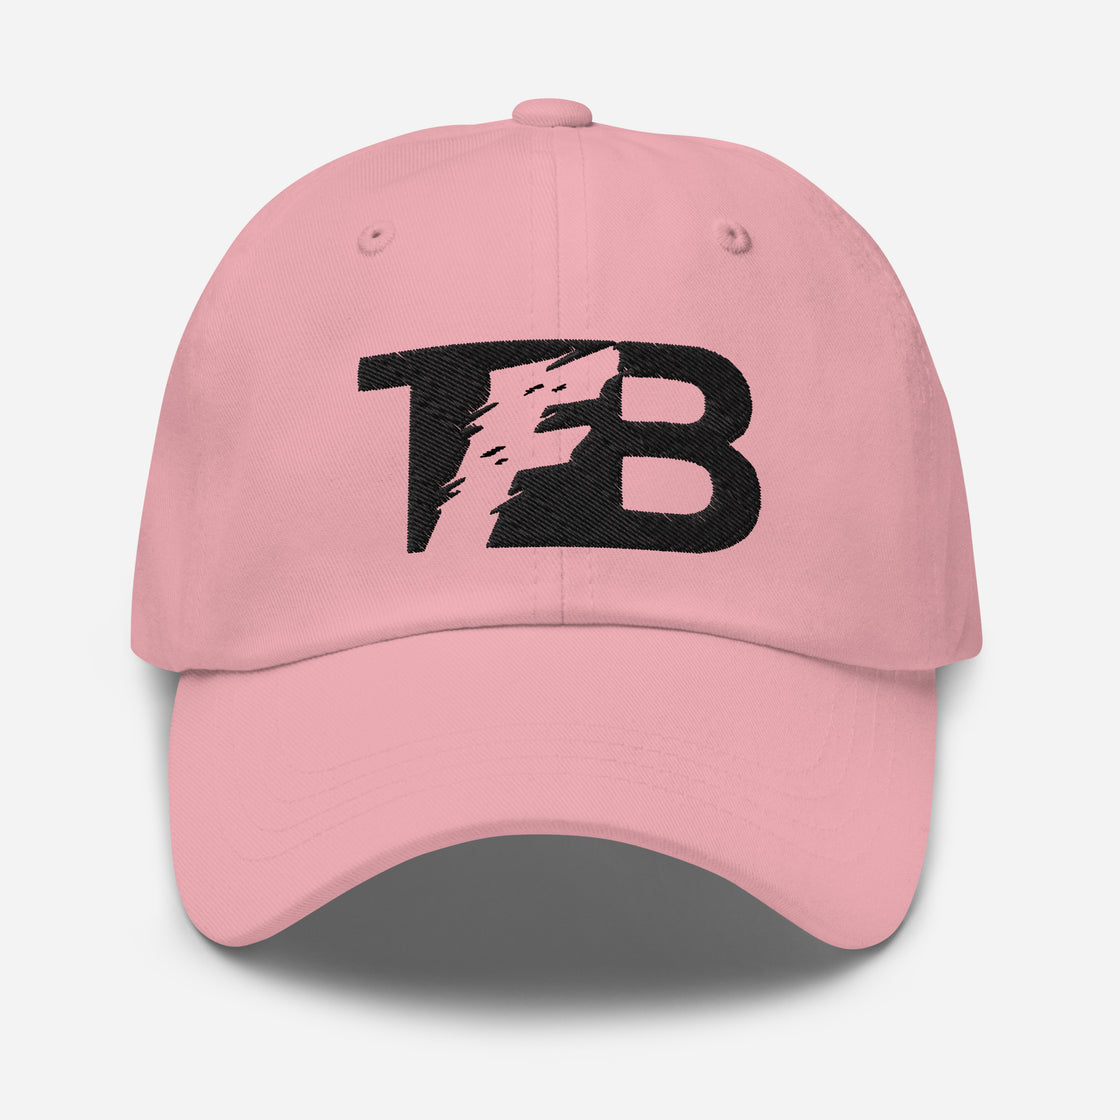 TFB Cap